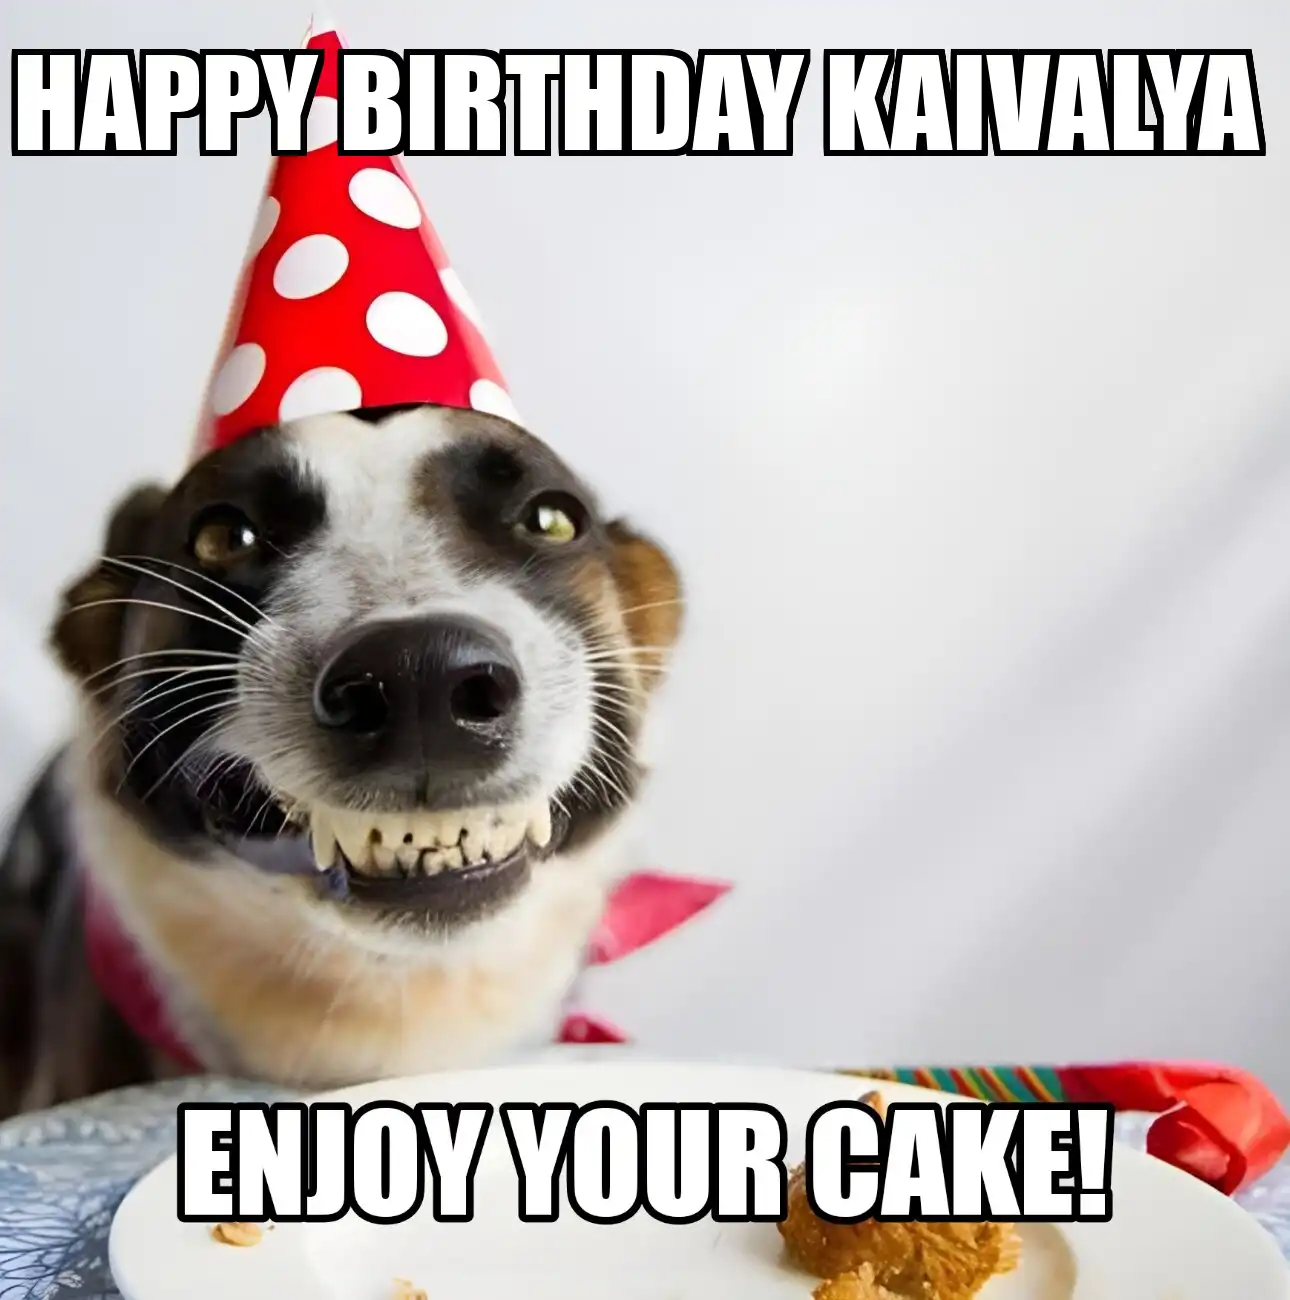 Happy Birthday Kaivalya Enjoy Your Cake Dog Meme